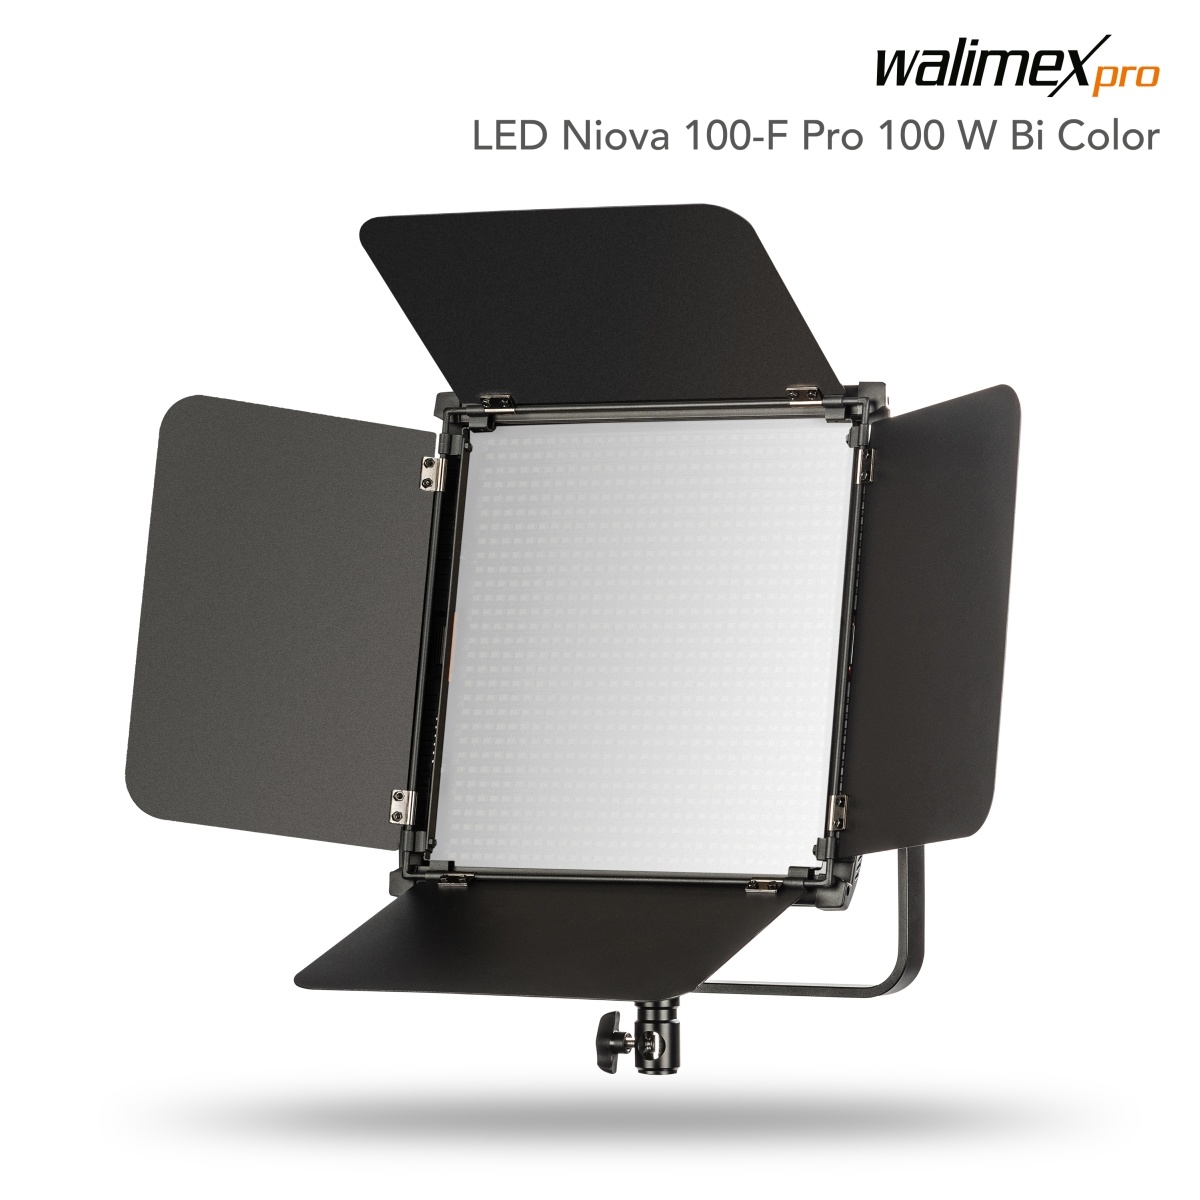 LED Niova 100-F Pro 100W Bi Color - walimex-webshop.com